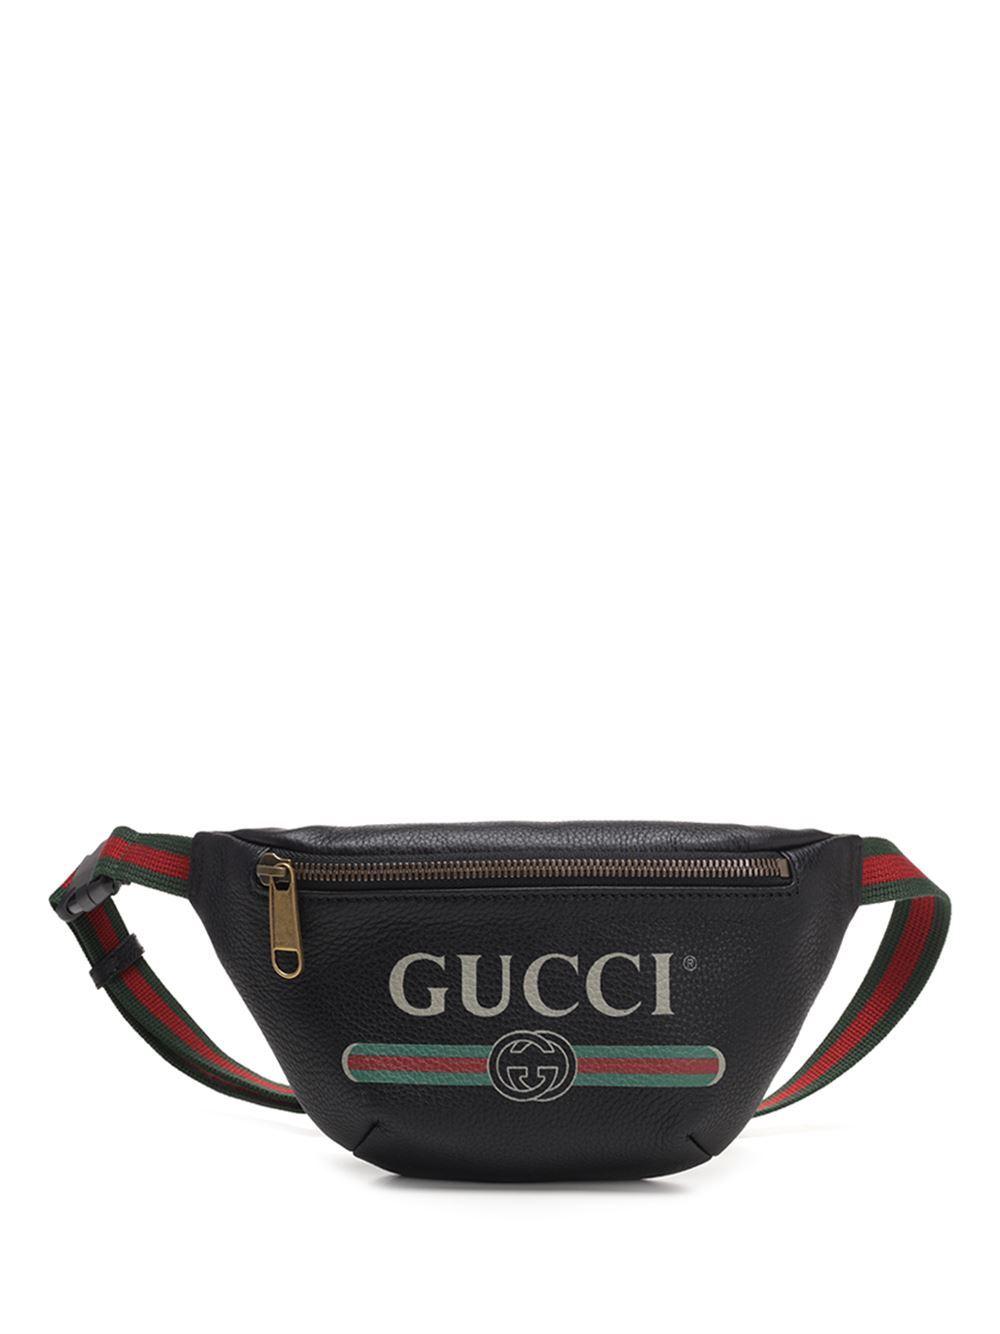 Gucci Leather Logo Print Belt Bag in Black for Men - Lyst